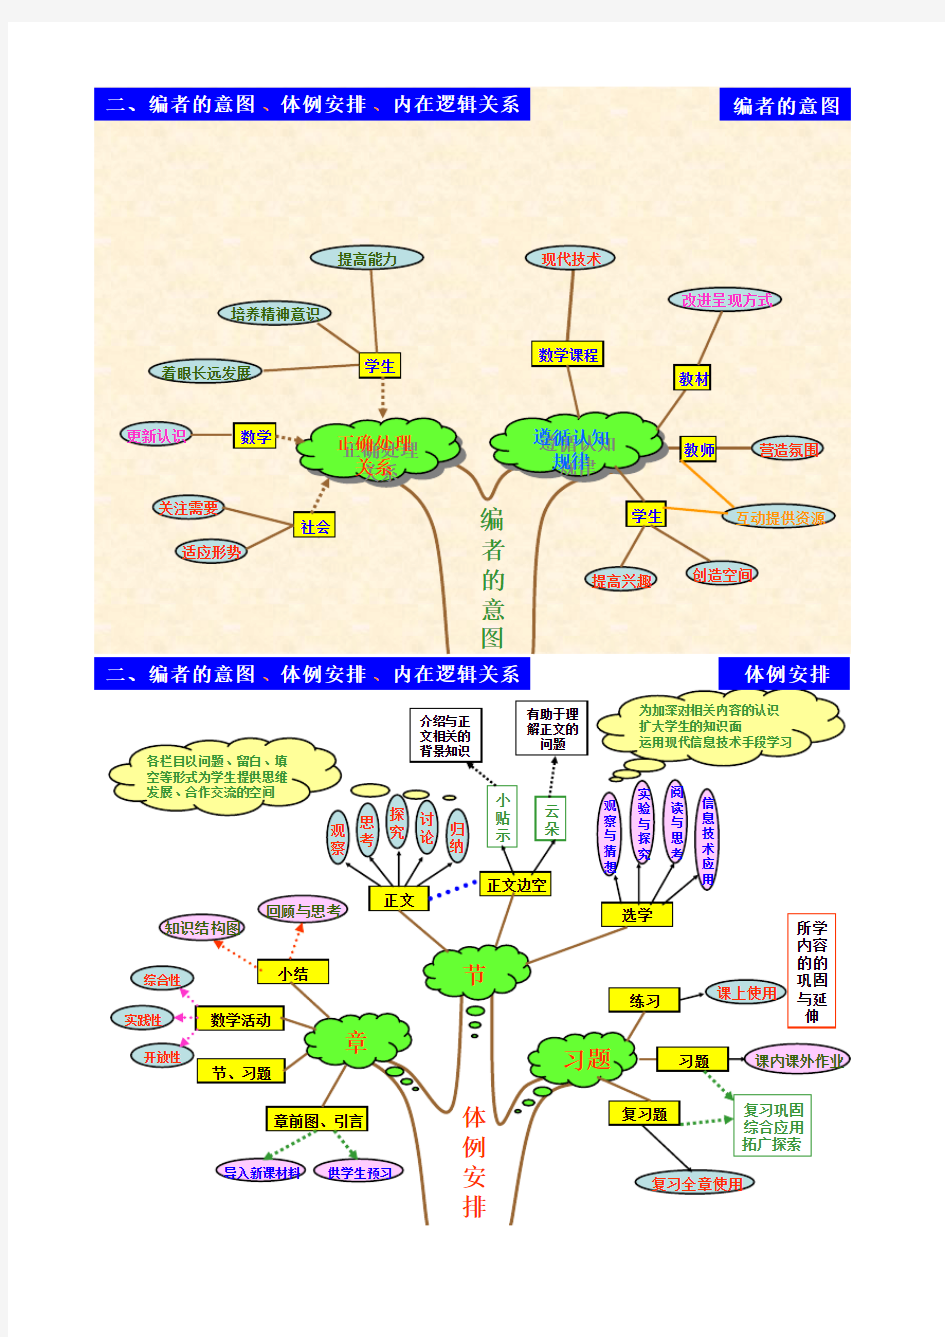 初中数学知识树及知识结构图